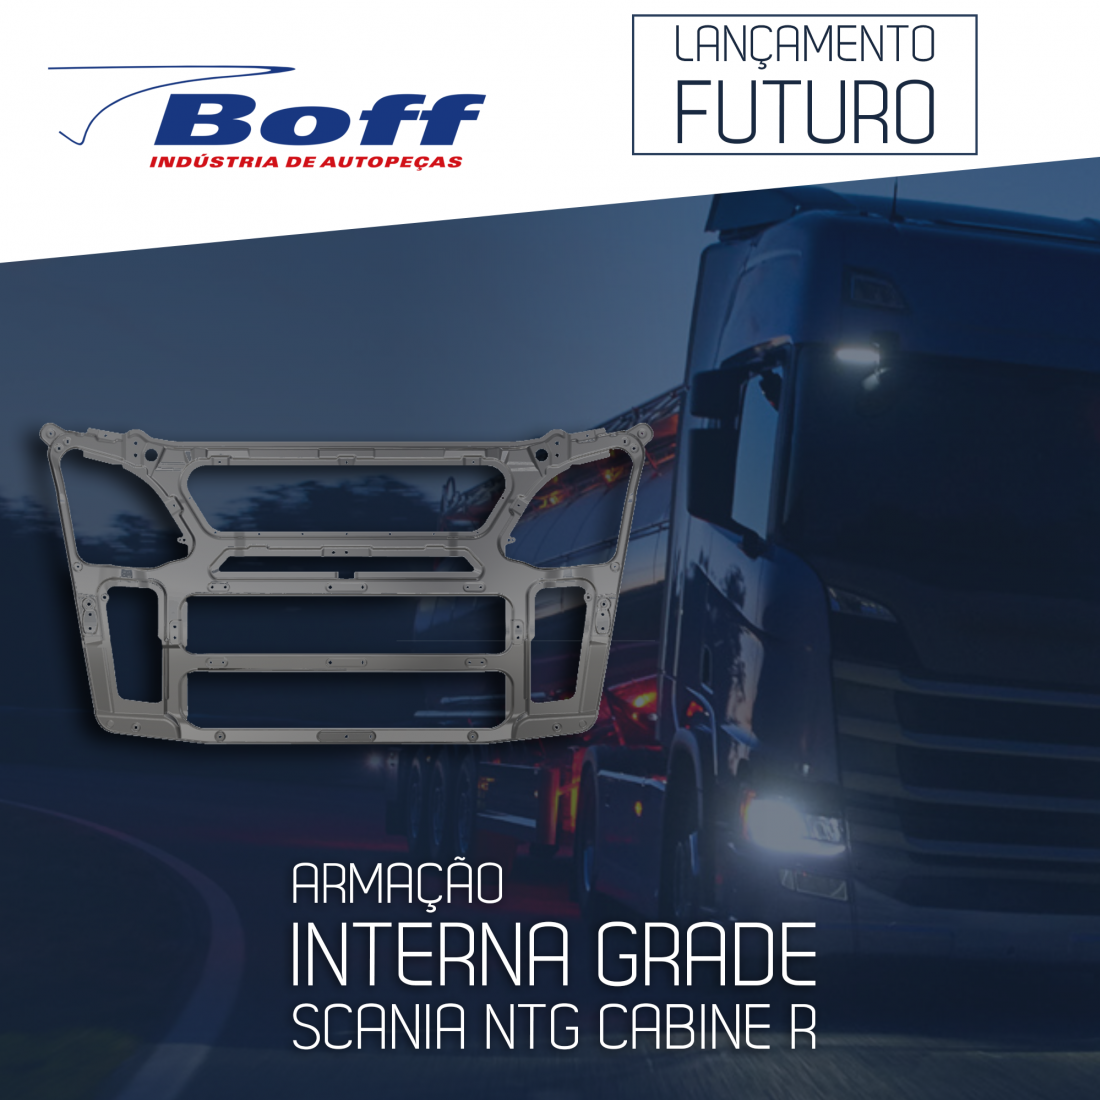 Lançamento futuro grade interna Scania NTG